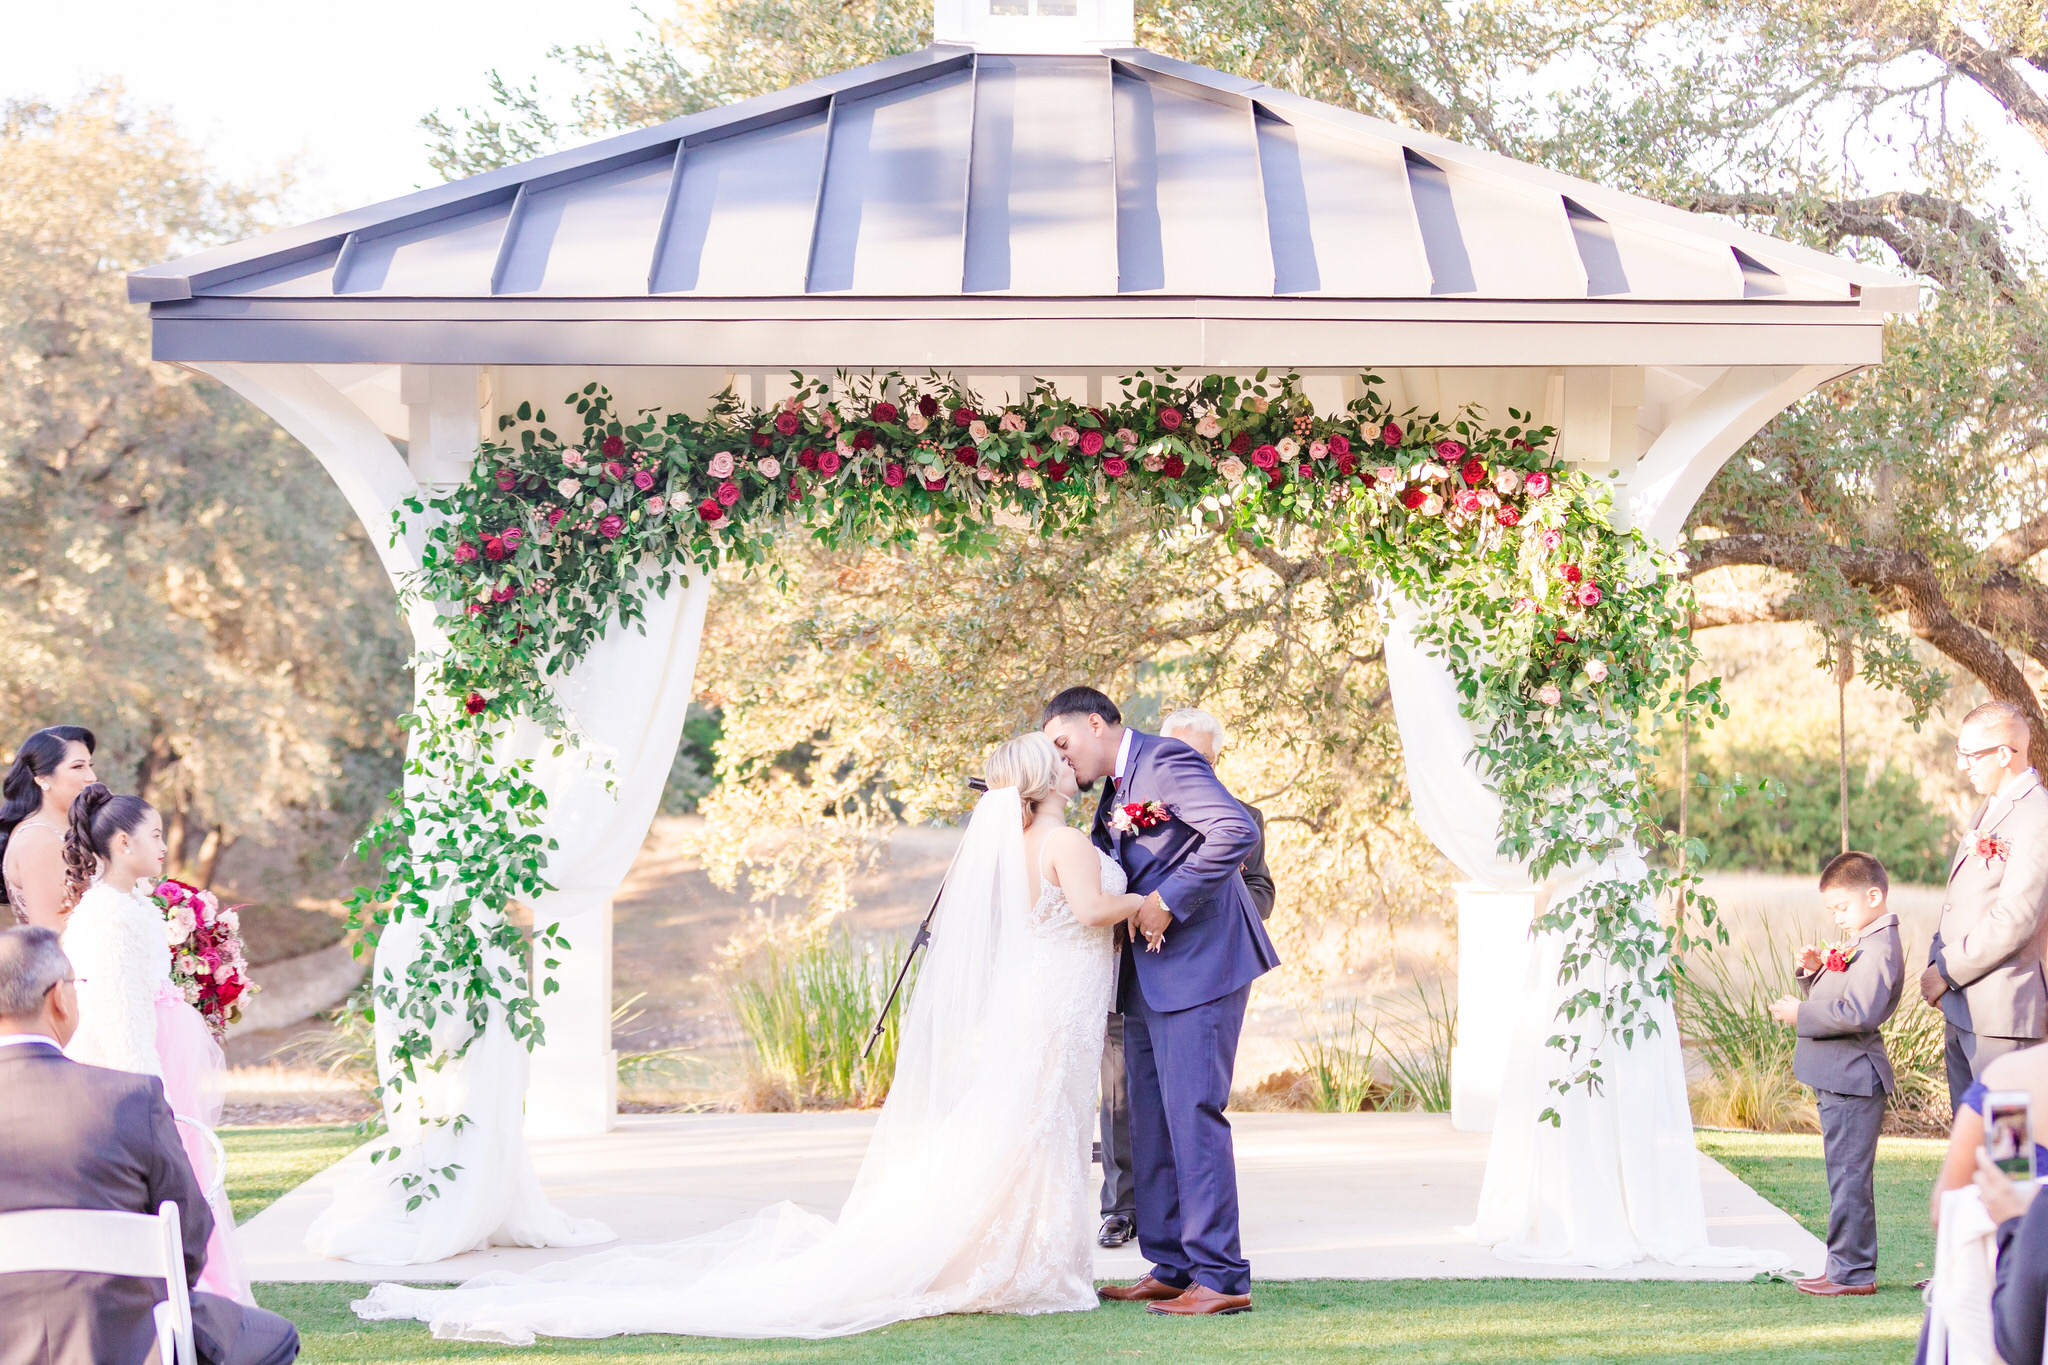 A Maroon & Dusty Rose Wedding at Kendall Point in Boerne, TX by Dawn Elizabeth Studios, San Antonio Wedding Photographer